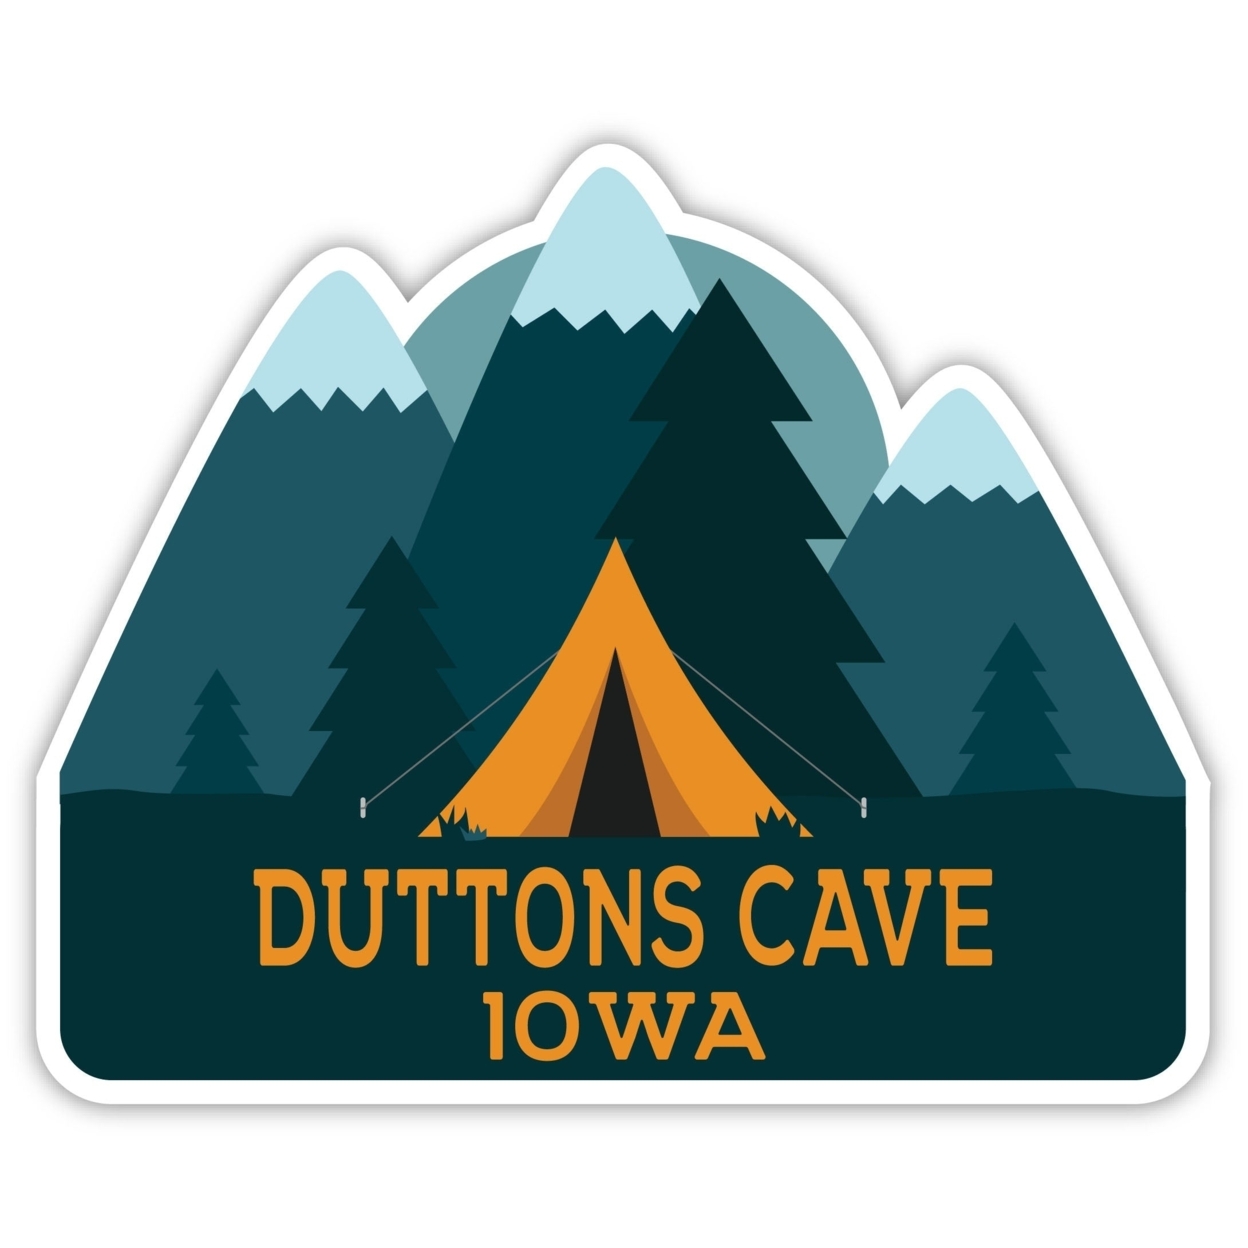 Duttons Cave Iowa Souvenir Decorative Stickers (Choose Theme And Size) - Single Unit, 2-Inch, Tent